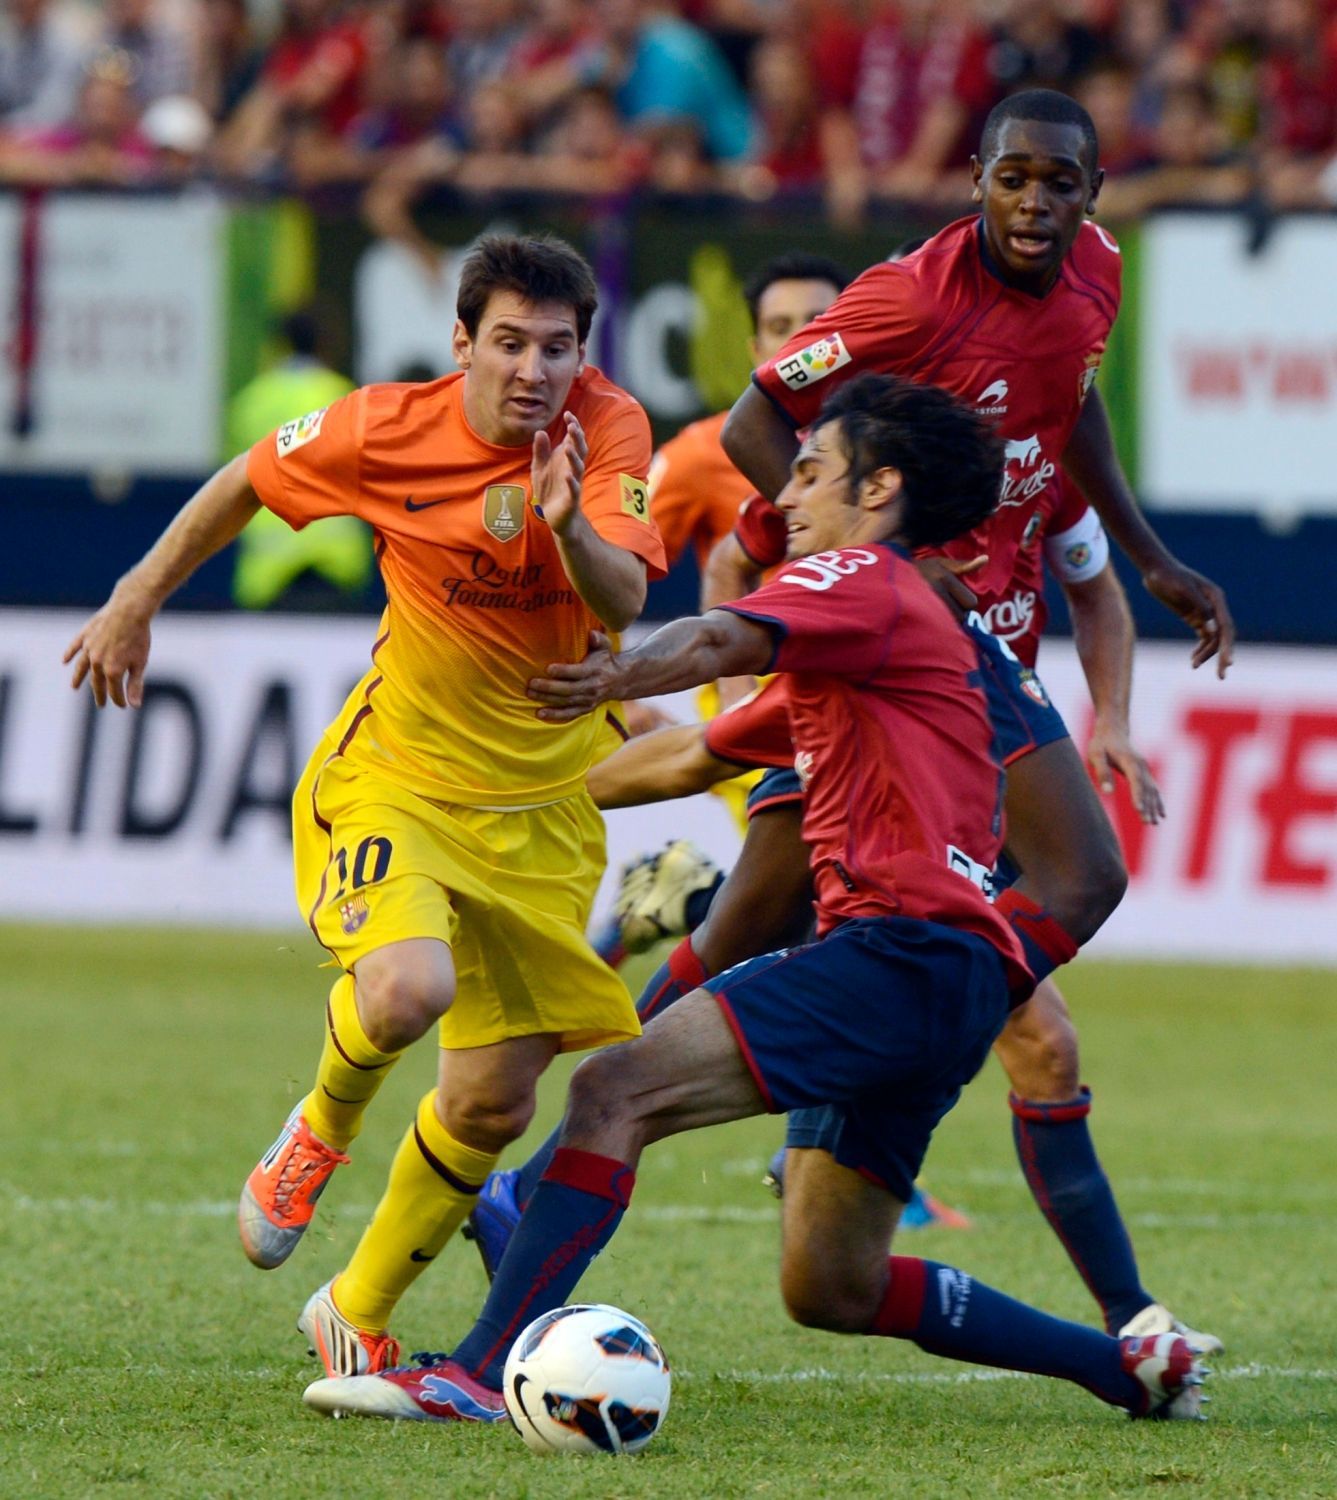 Fotbalista Barcelony Lionel Messi je faulován Alejandrem Arribasem v utkání La Ligy 2012/13 s Osasunou.